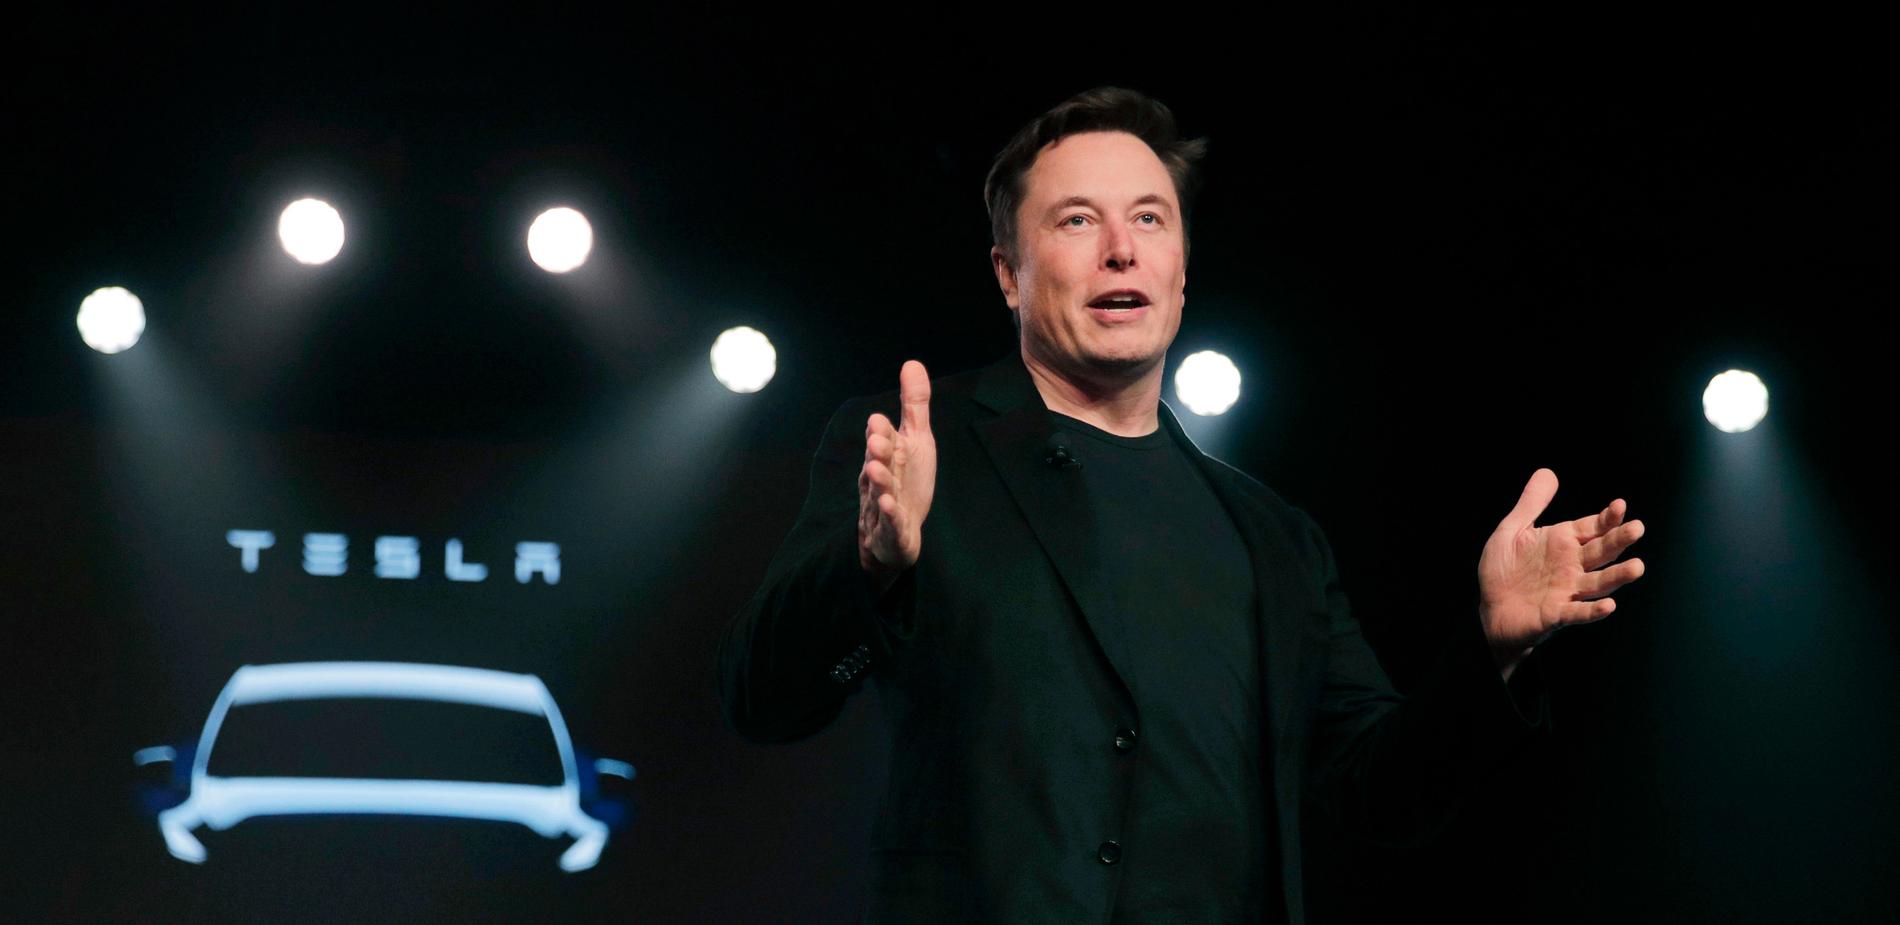 Elon Musks ageranden har allvarligt skadat både hans personliga varumärke och hans företag Tesla och X.